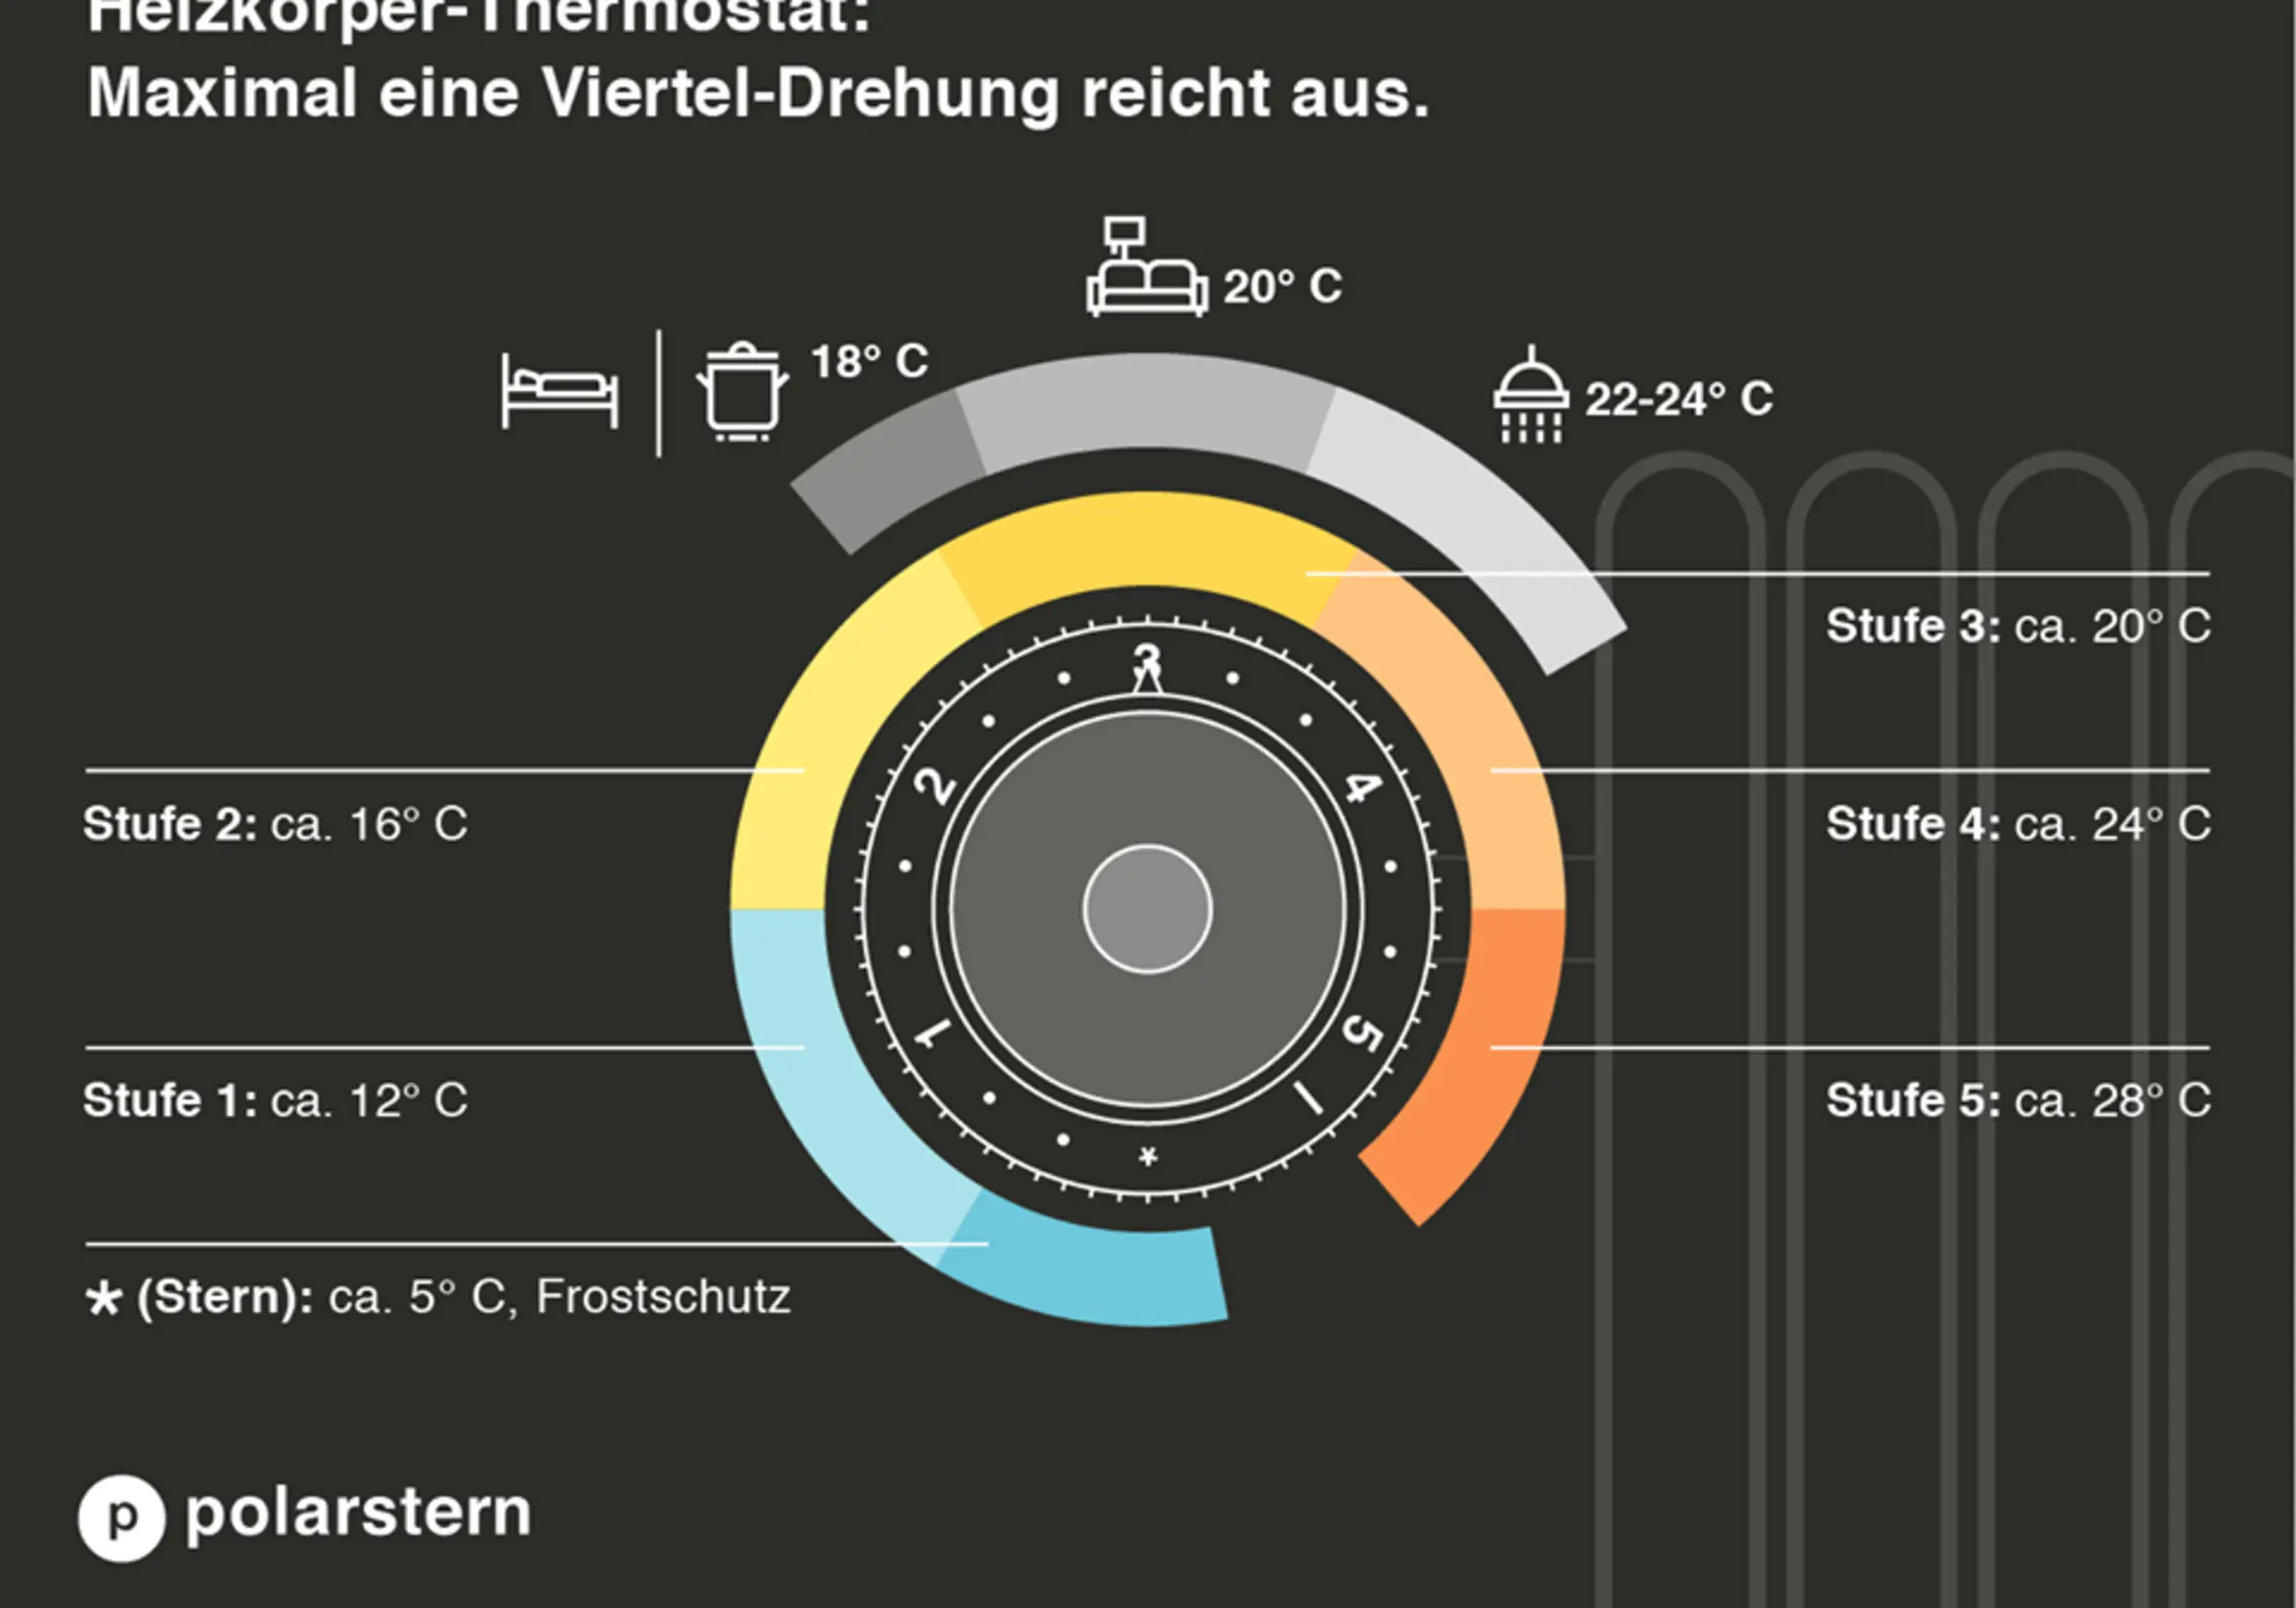 Grafik zur Bedeutung der Zahlen und Temperaturen auf einem Thermostat